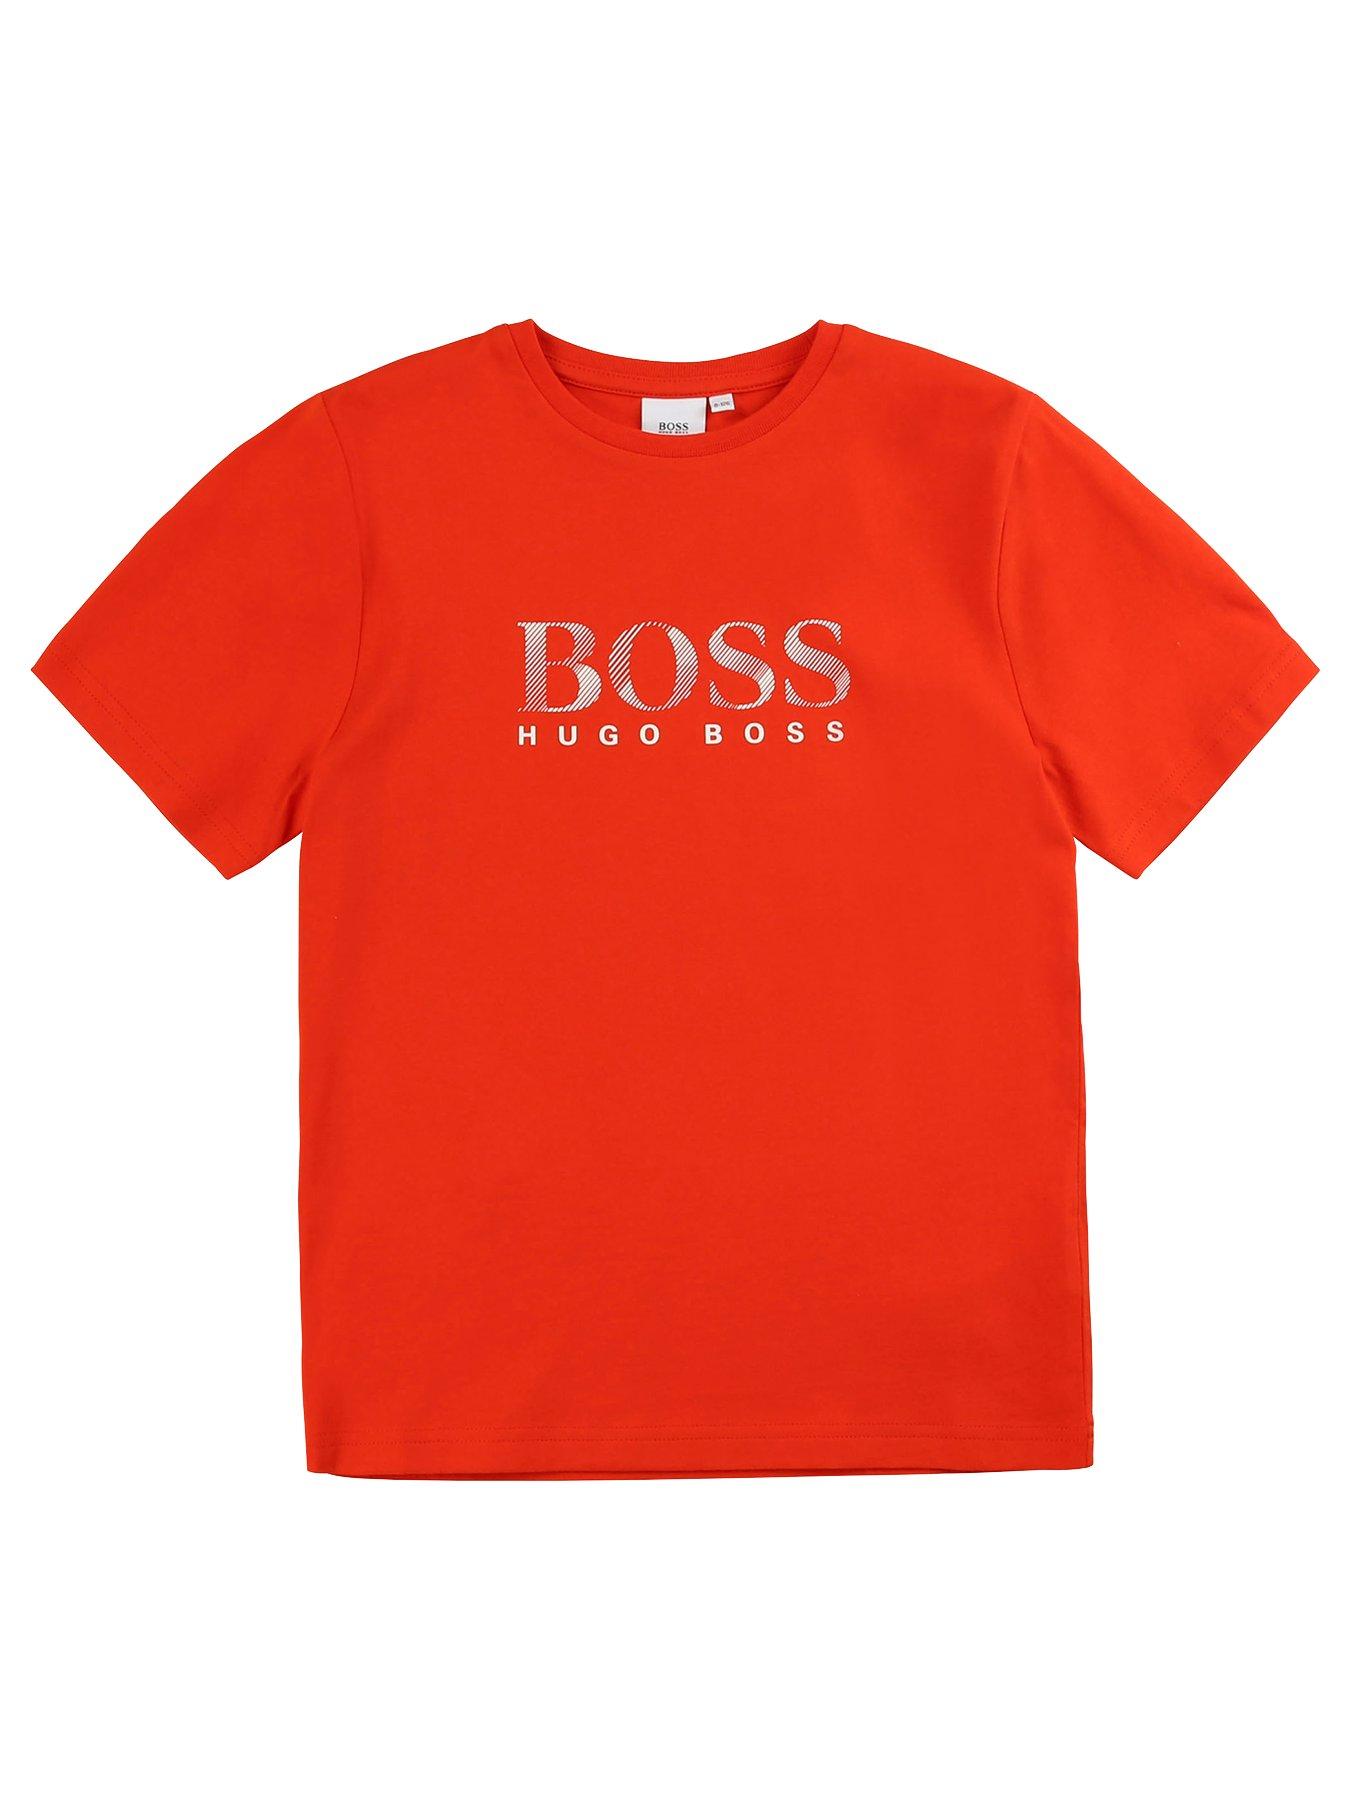 hugo boss baby wear